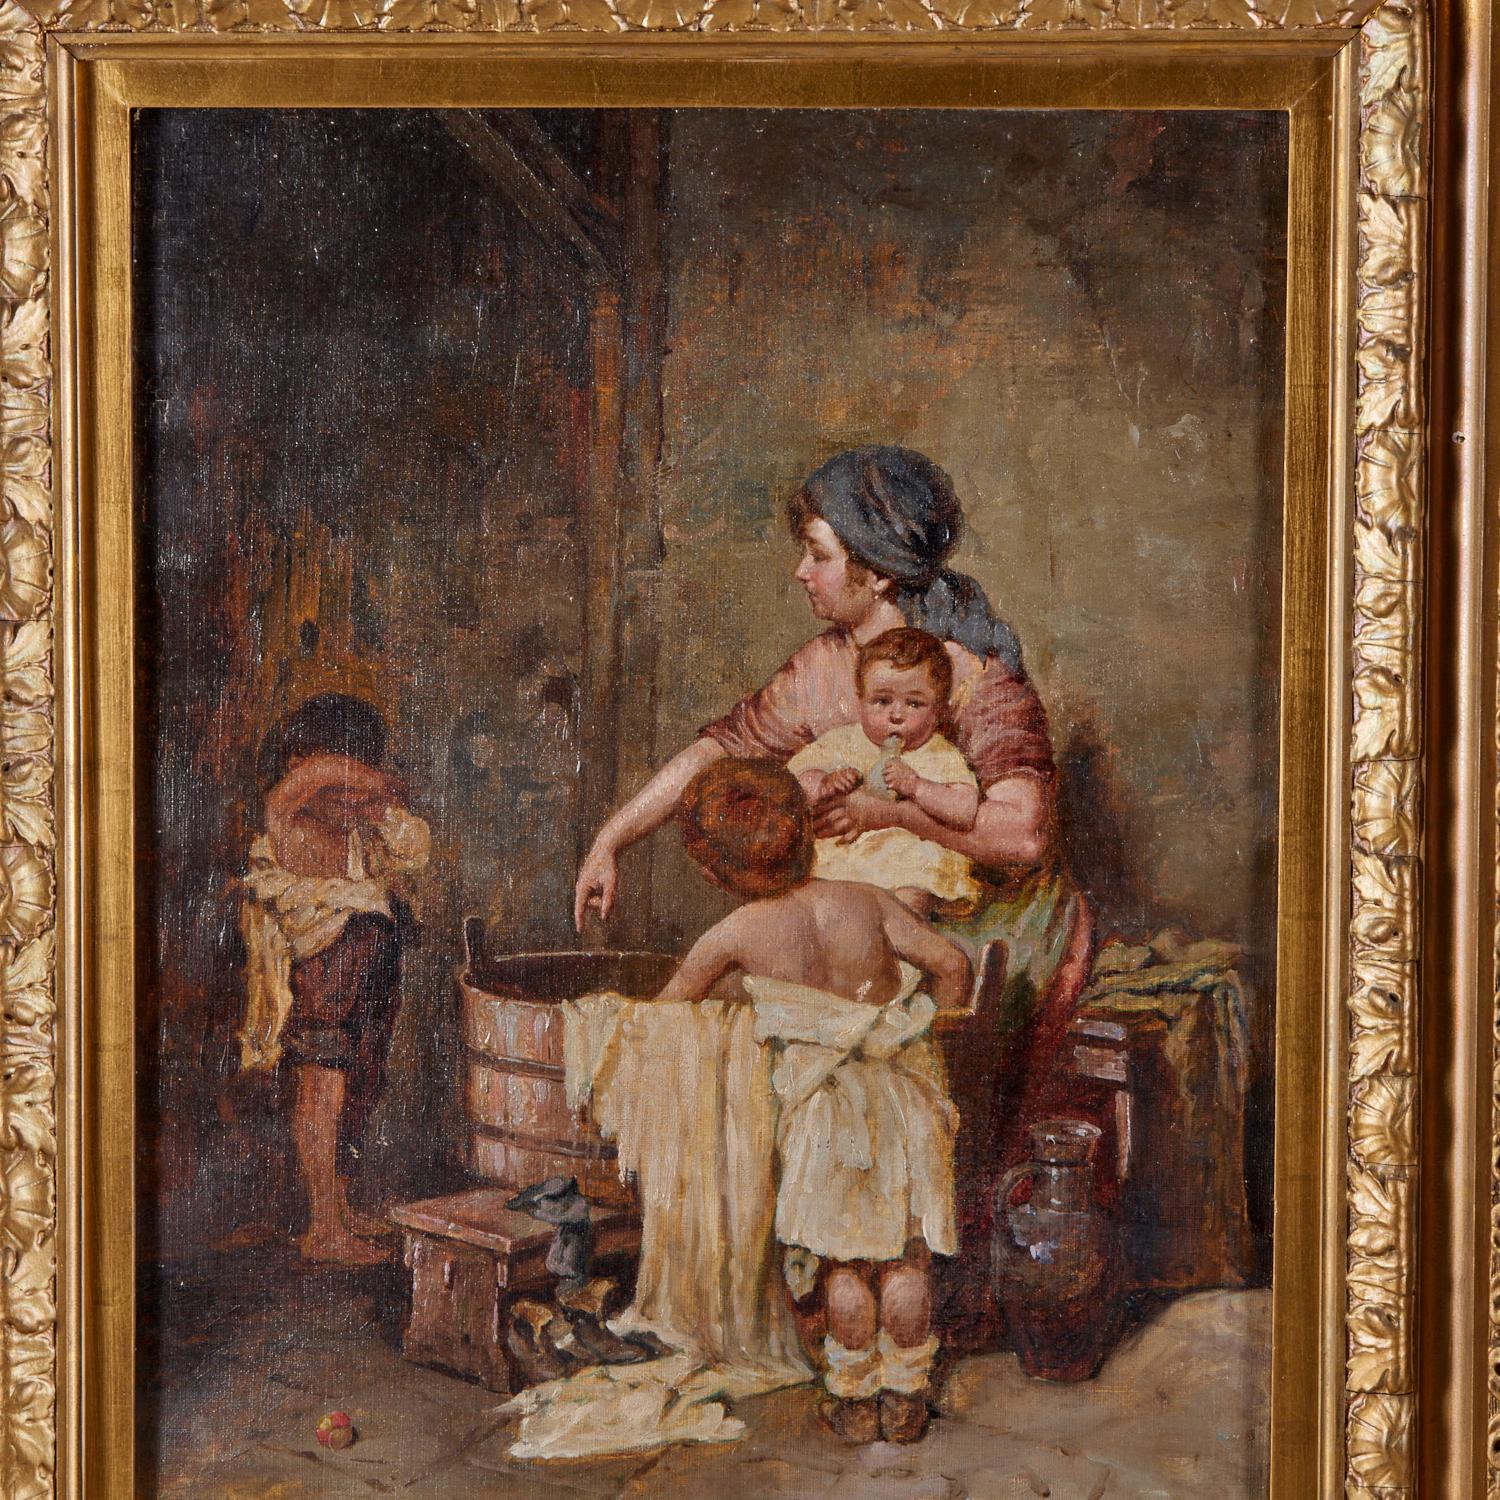 D'après Gustav Laeverenz (allemand, 1851-1909), huile sur toile. Une plaque en laiton indique C. Laverent 